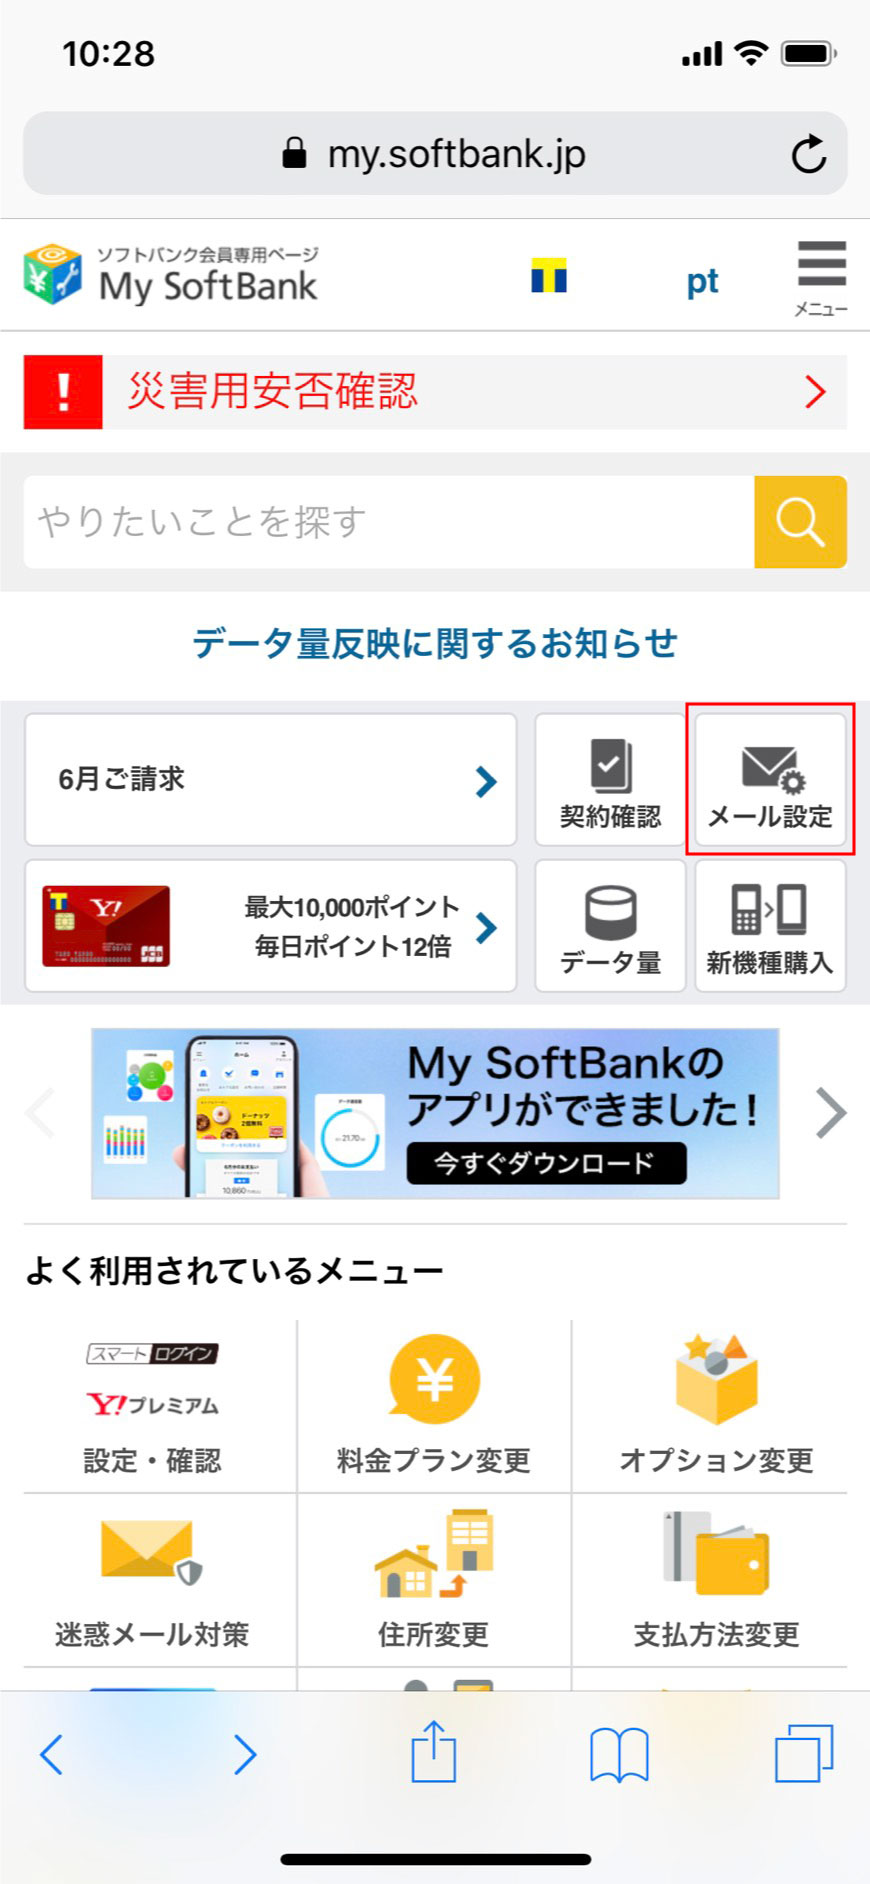 1. My Softbankへアクセスし、【メール設定】をタップします。